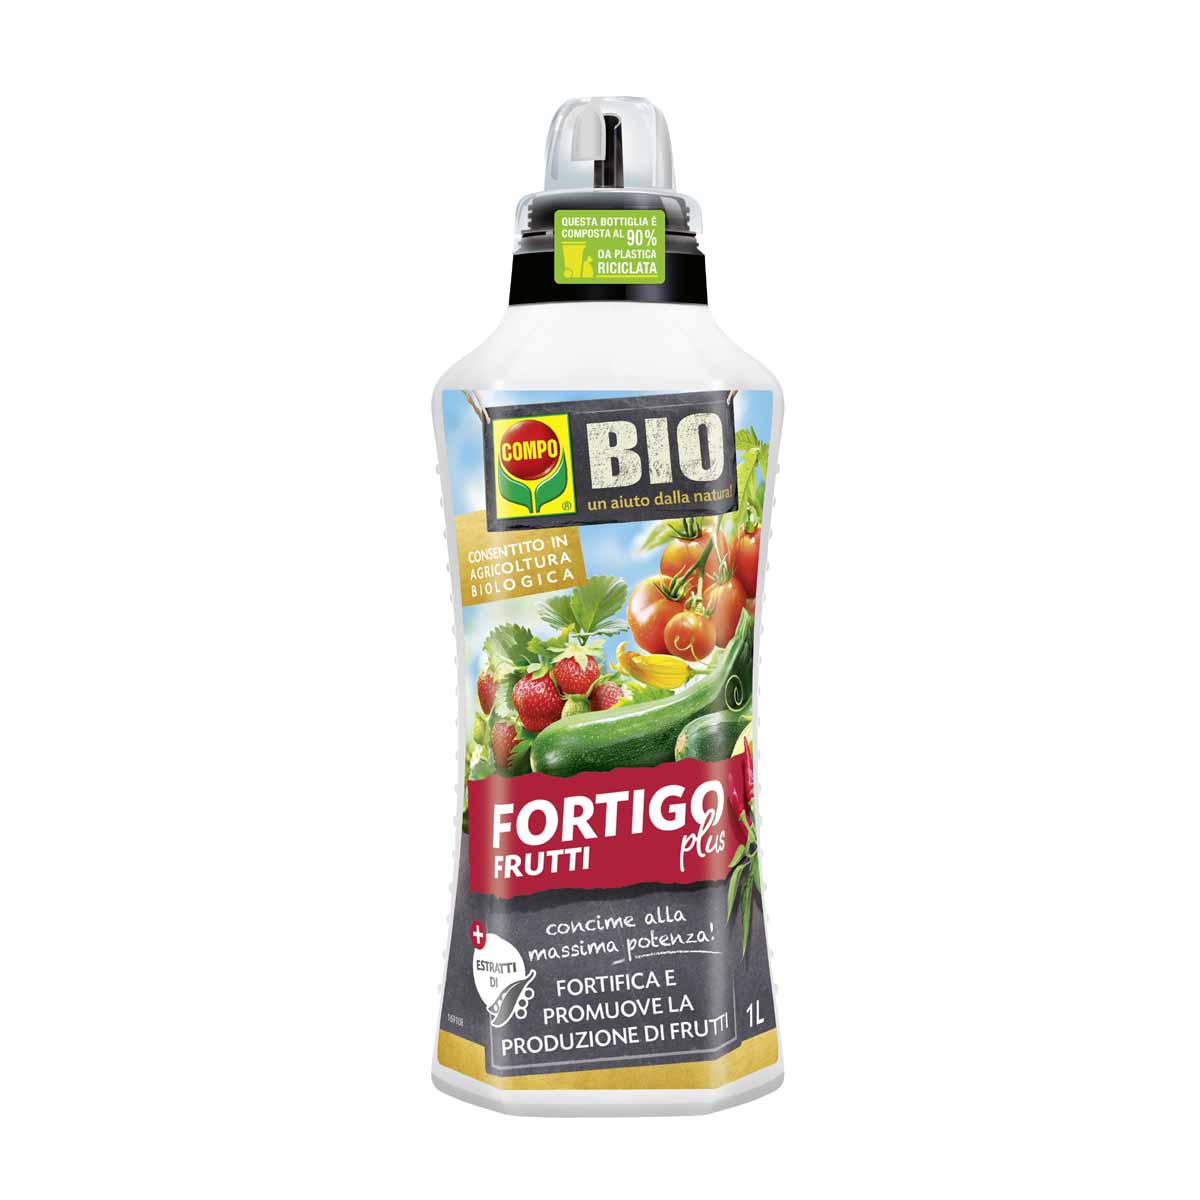 Compo BIO Fortigo Plus Frutti concime liquido